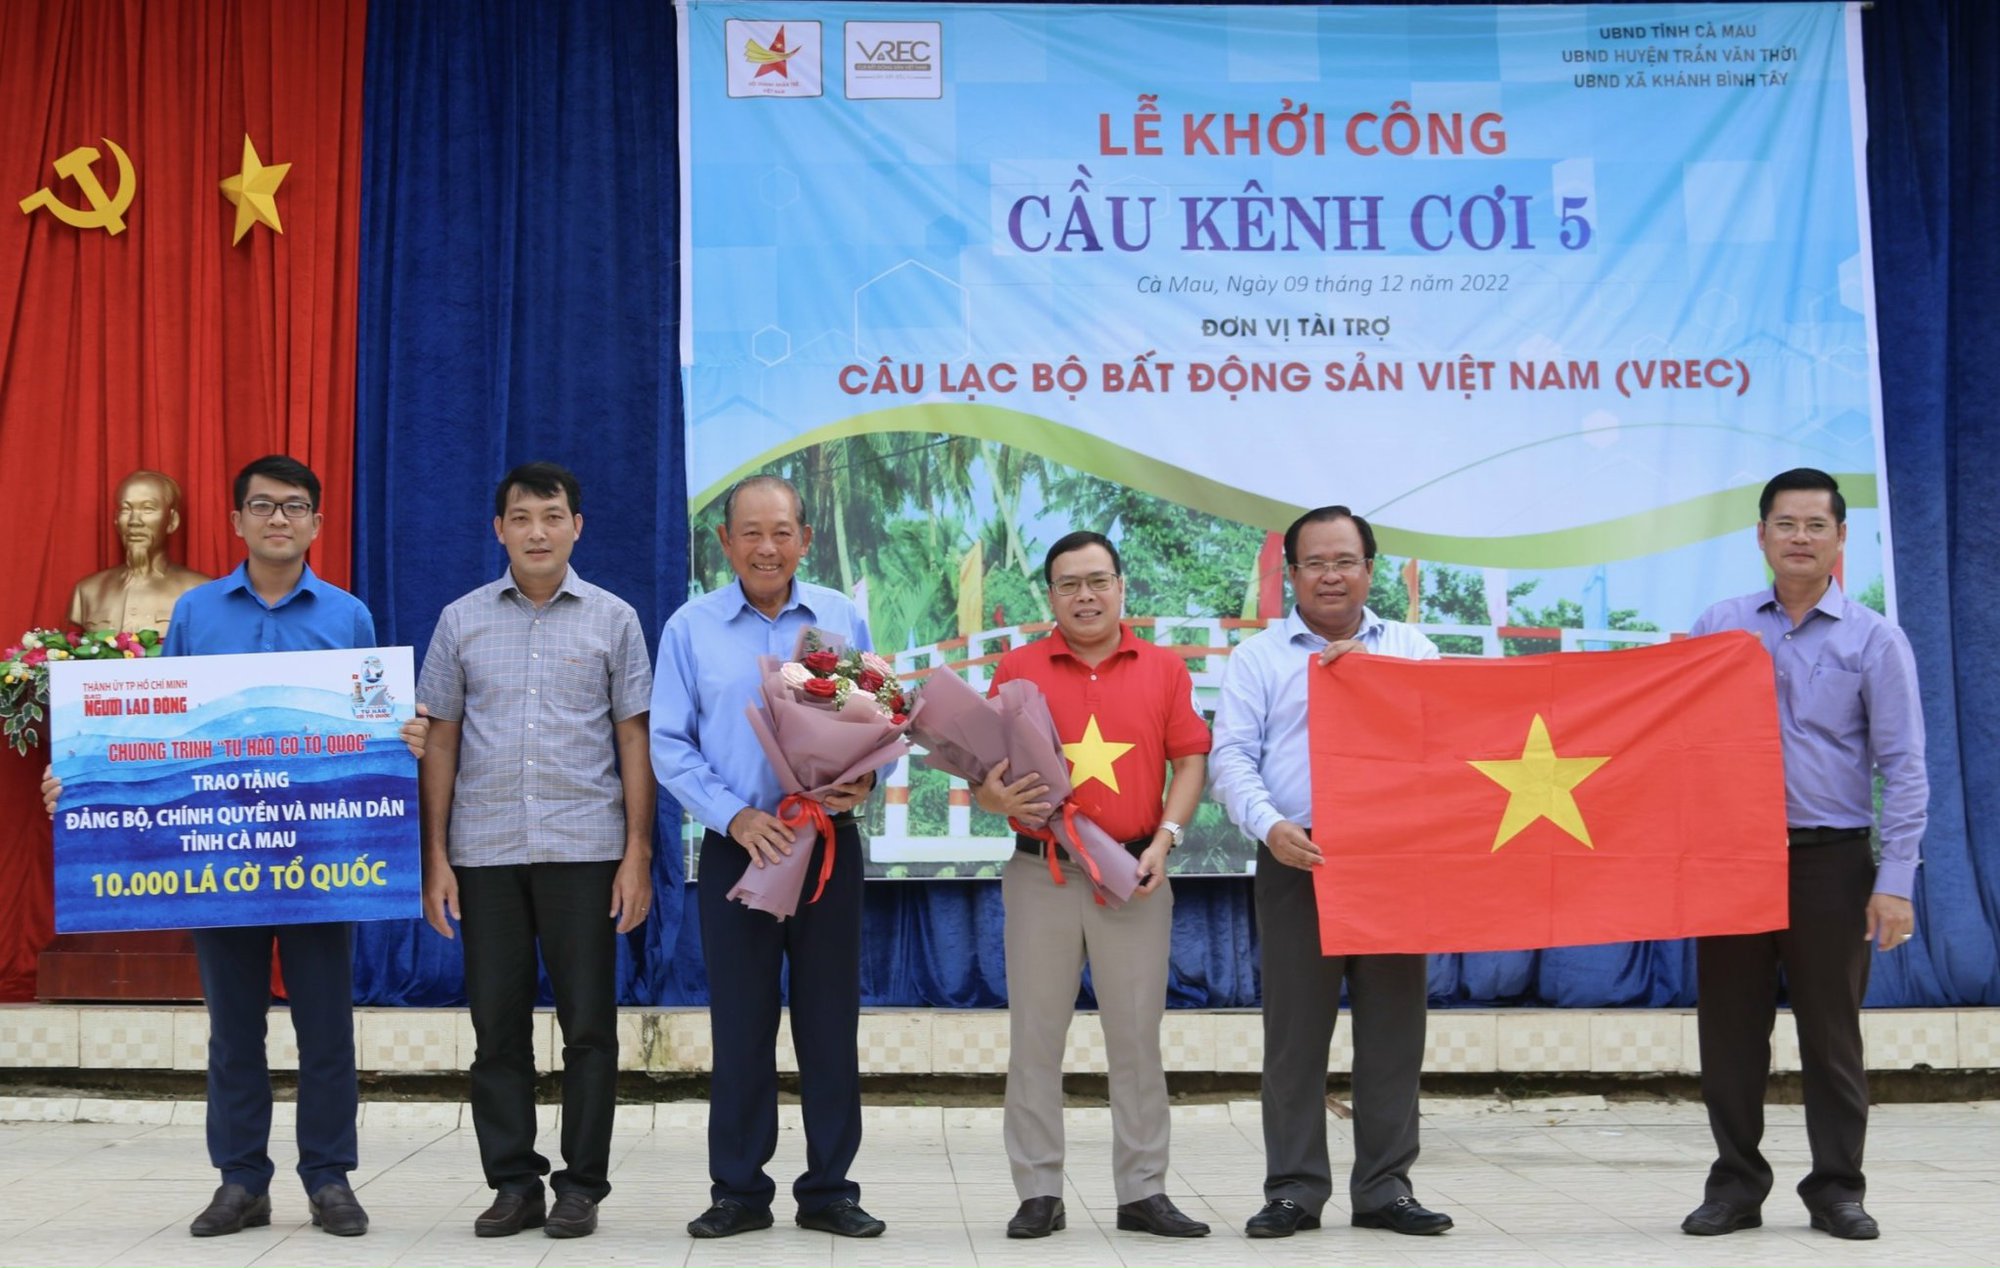 Lá cờ Tổ quốc Cà Mau là một trong những loại cờ đặc trưng của miền tây Nam Bộ Việt Nam. Bằng hình ảnh lá cờ xanh trắng đặc trưng, cờ Tổ quốc Cà Mau thể hiện lòng yêu nước và truyền thống của người dân địa phương. Nếu bạn muốn tìm hiểu thêm về tác phẩm nghệ thuật đặc biệt này, hãy xem các hình ảnh liên quan đến chủ đề này.